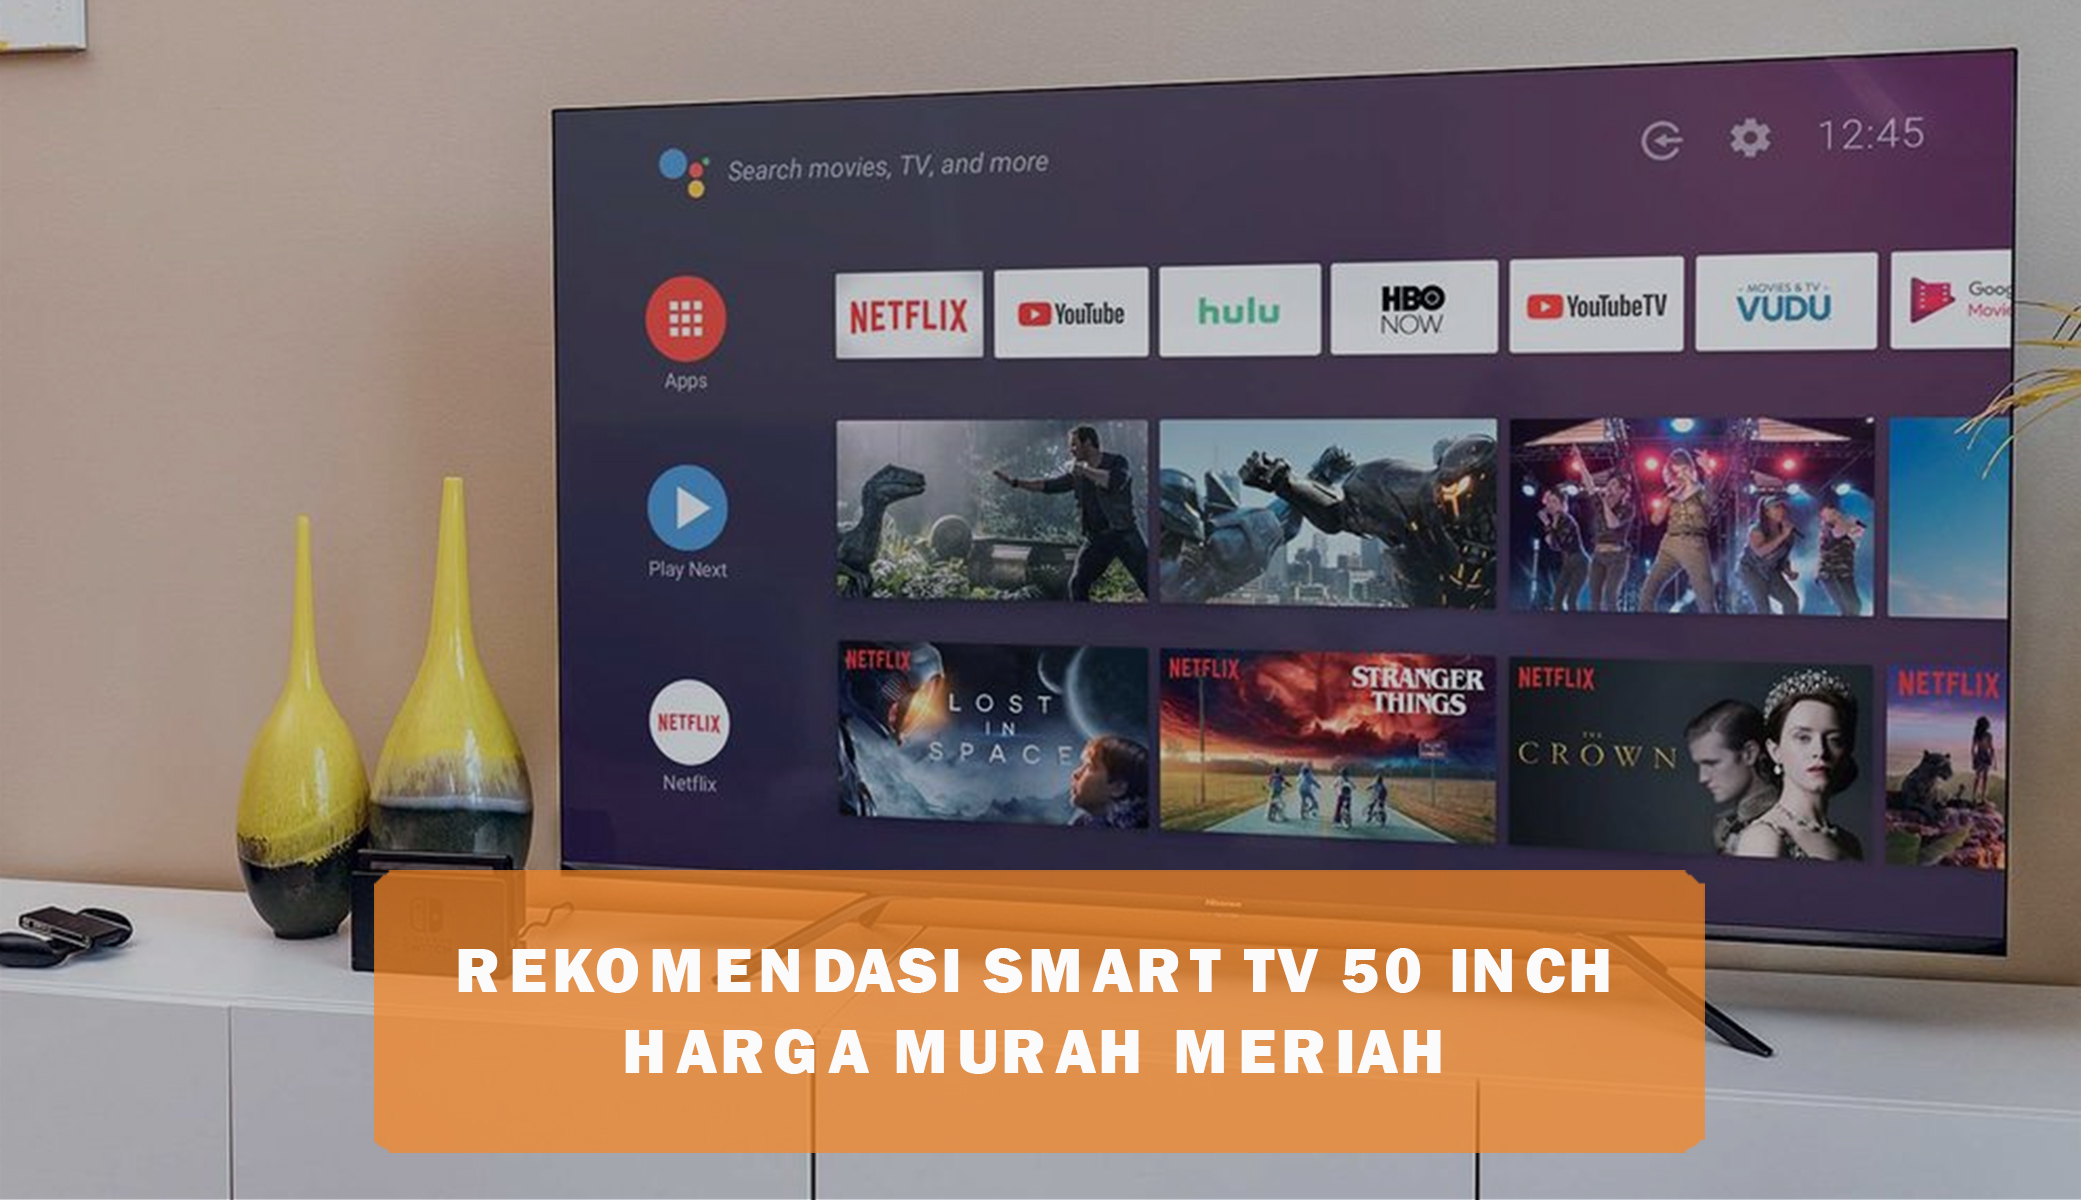 Rekomendasi Smart TV 50 Inch Harga Murah Meriah di Bawah 5 Jutaan, Pilihan Terbaik dan Terlaris